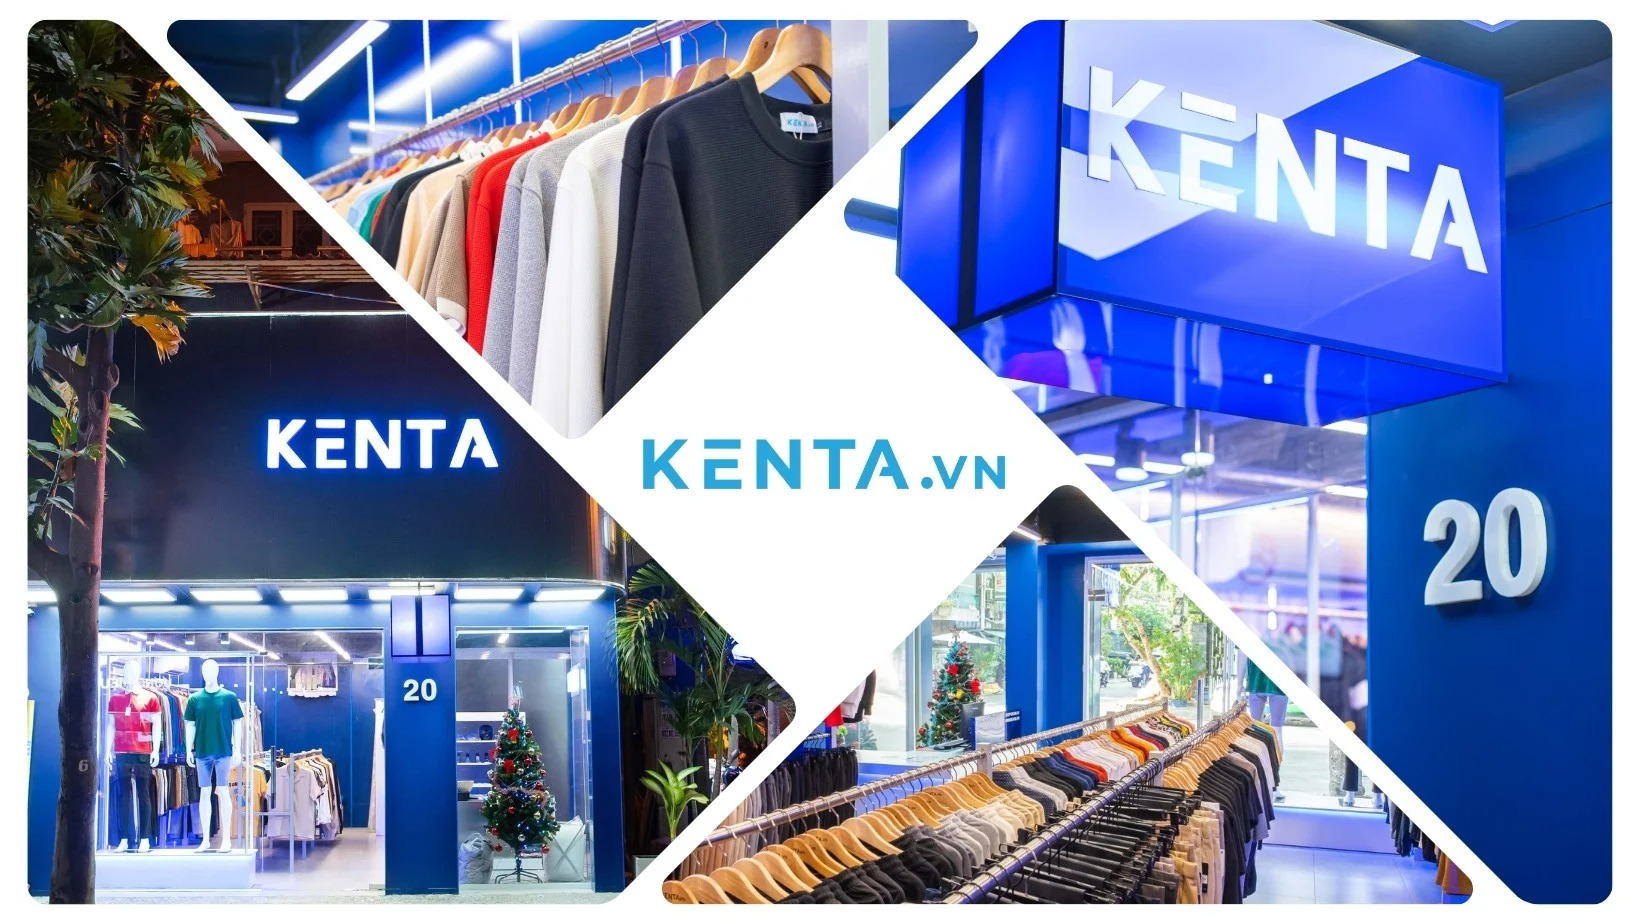 Kenta - Shop đồ nam nổi tiếng tại TP. HCM